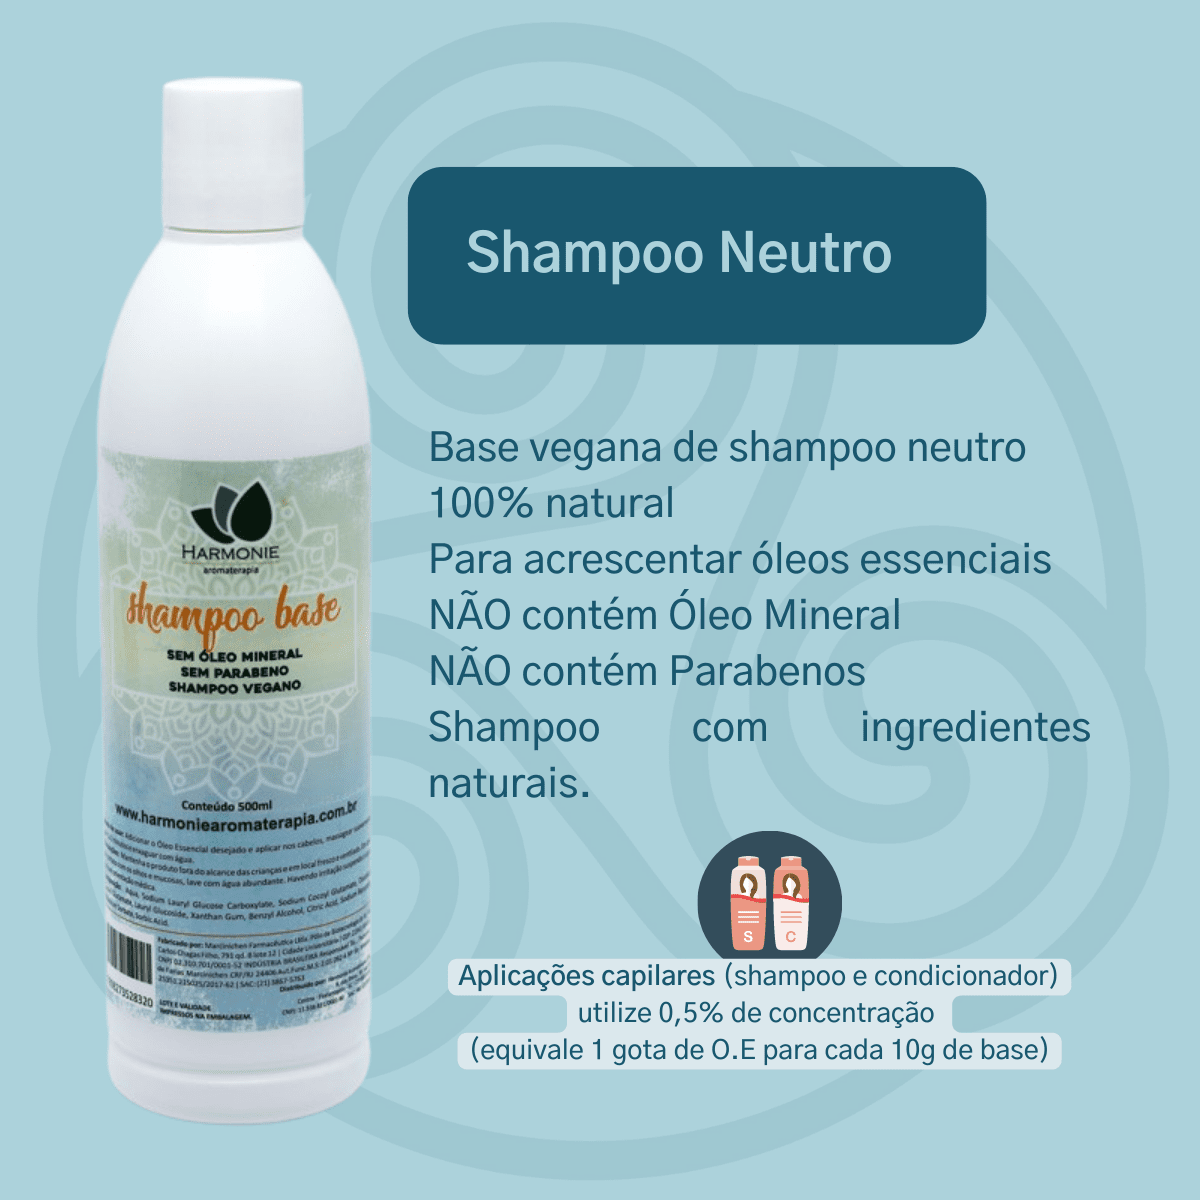 Shampoo Vegano Zemya de Carvão Ativo 200 ml – Natrium